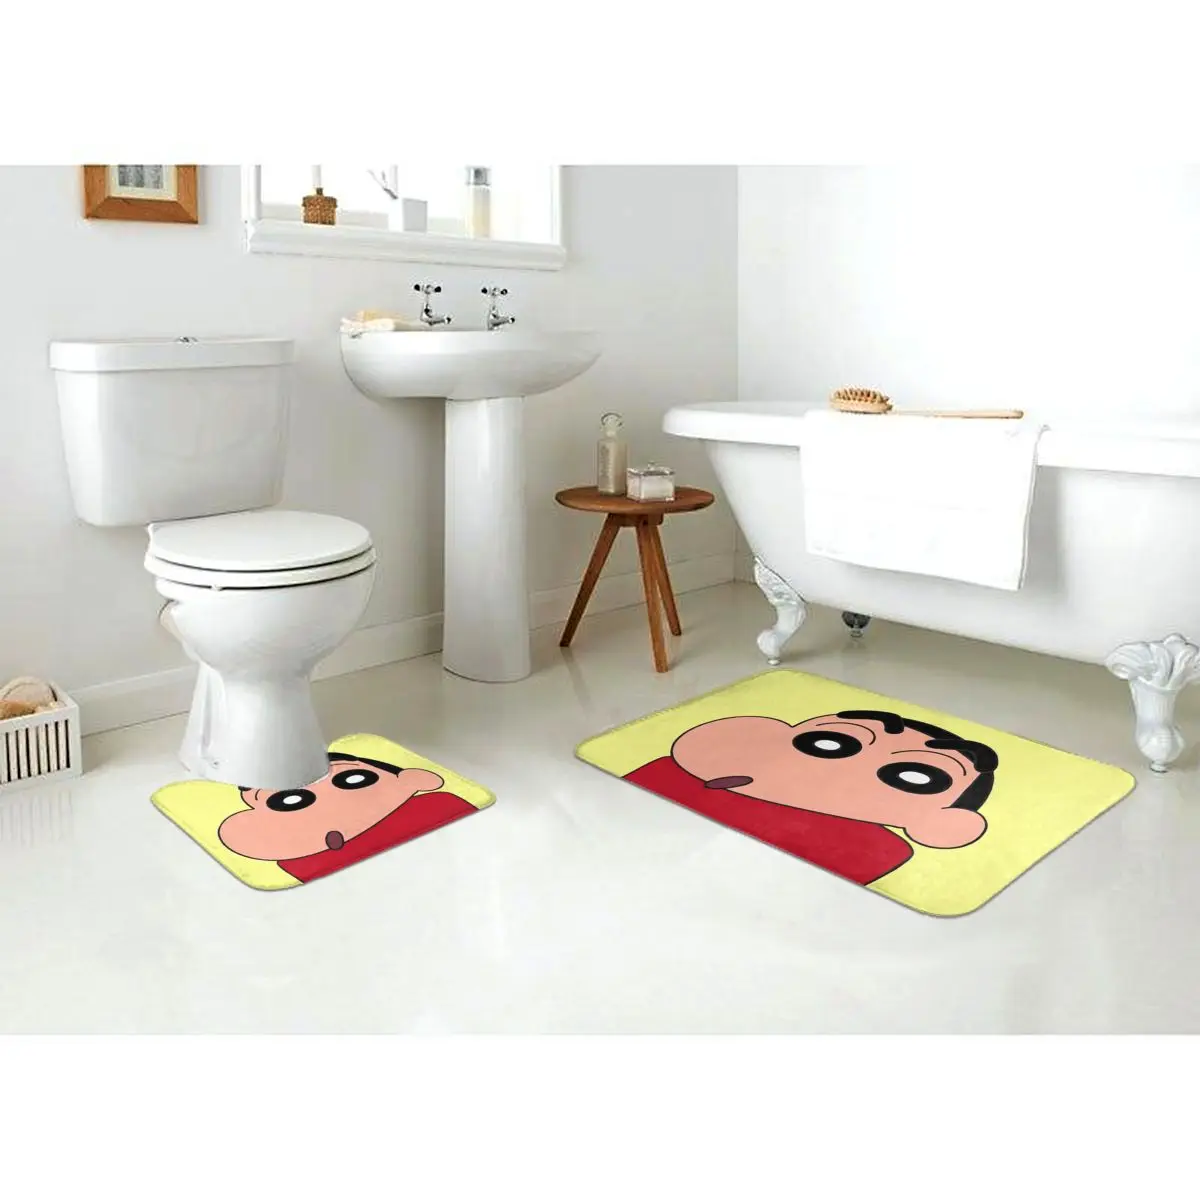 אנימה אופנה האמבטיה שטיח מחצלות להגדיר קליטת מים ו-anti slip שטיח הרצפה 2Piece נגד החלקה רפידות שטיחון לאמבטיה + Contour